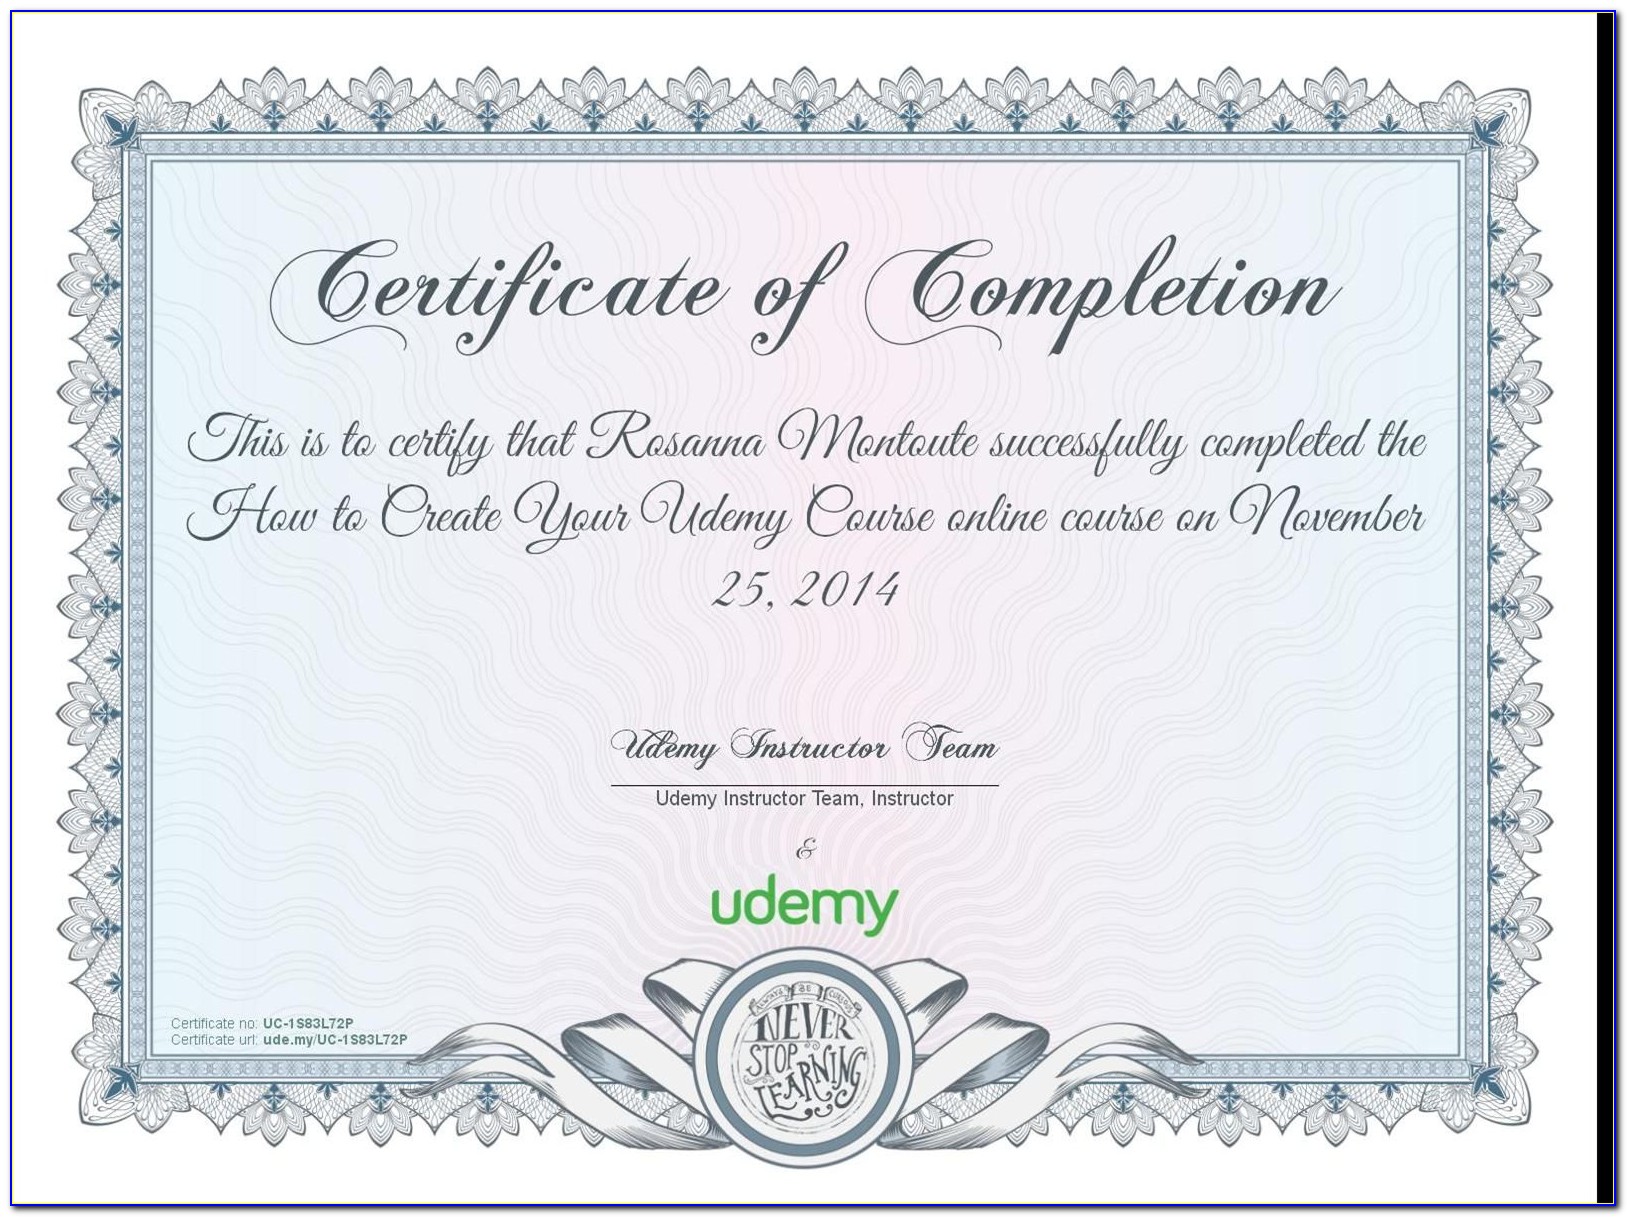 Udemy Course Certificate Value